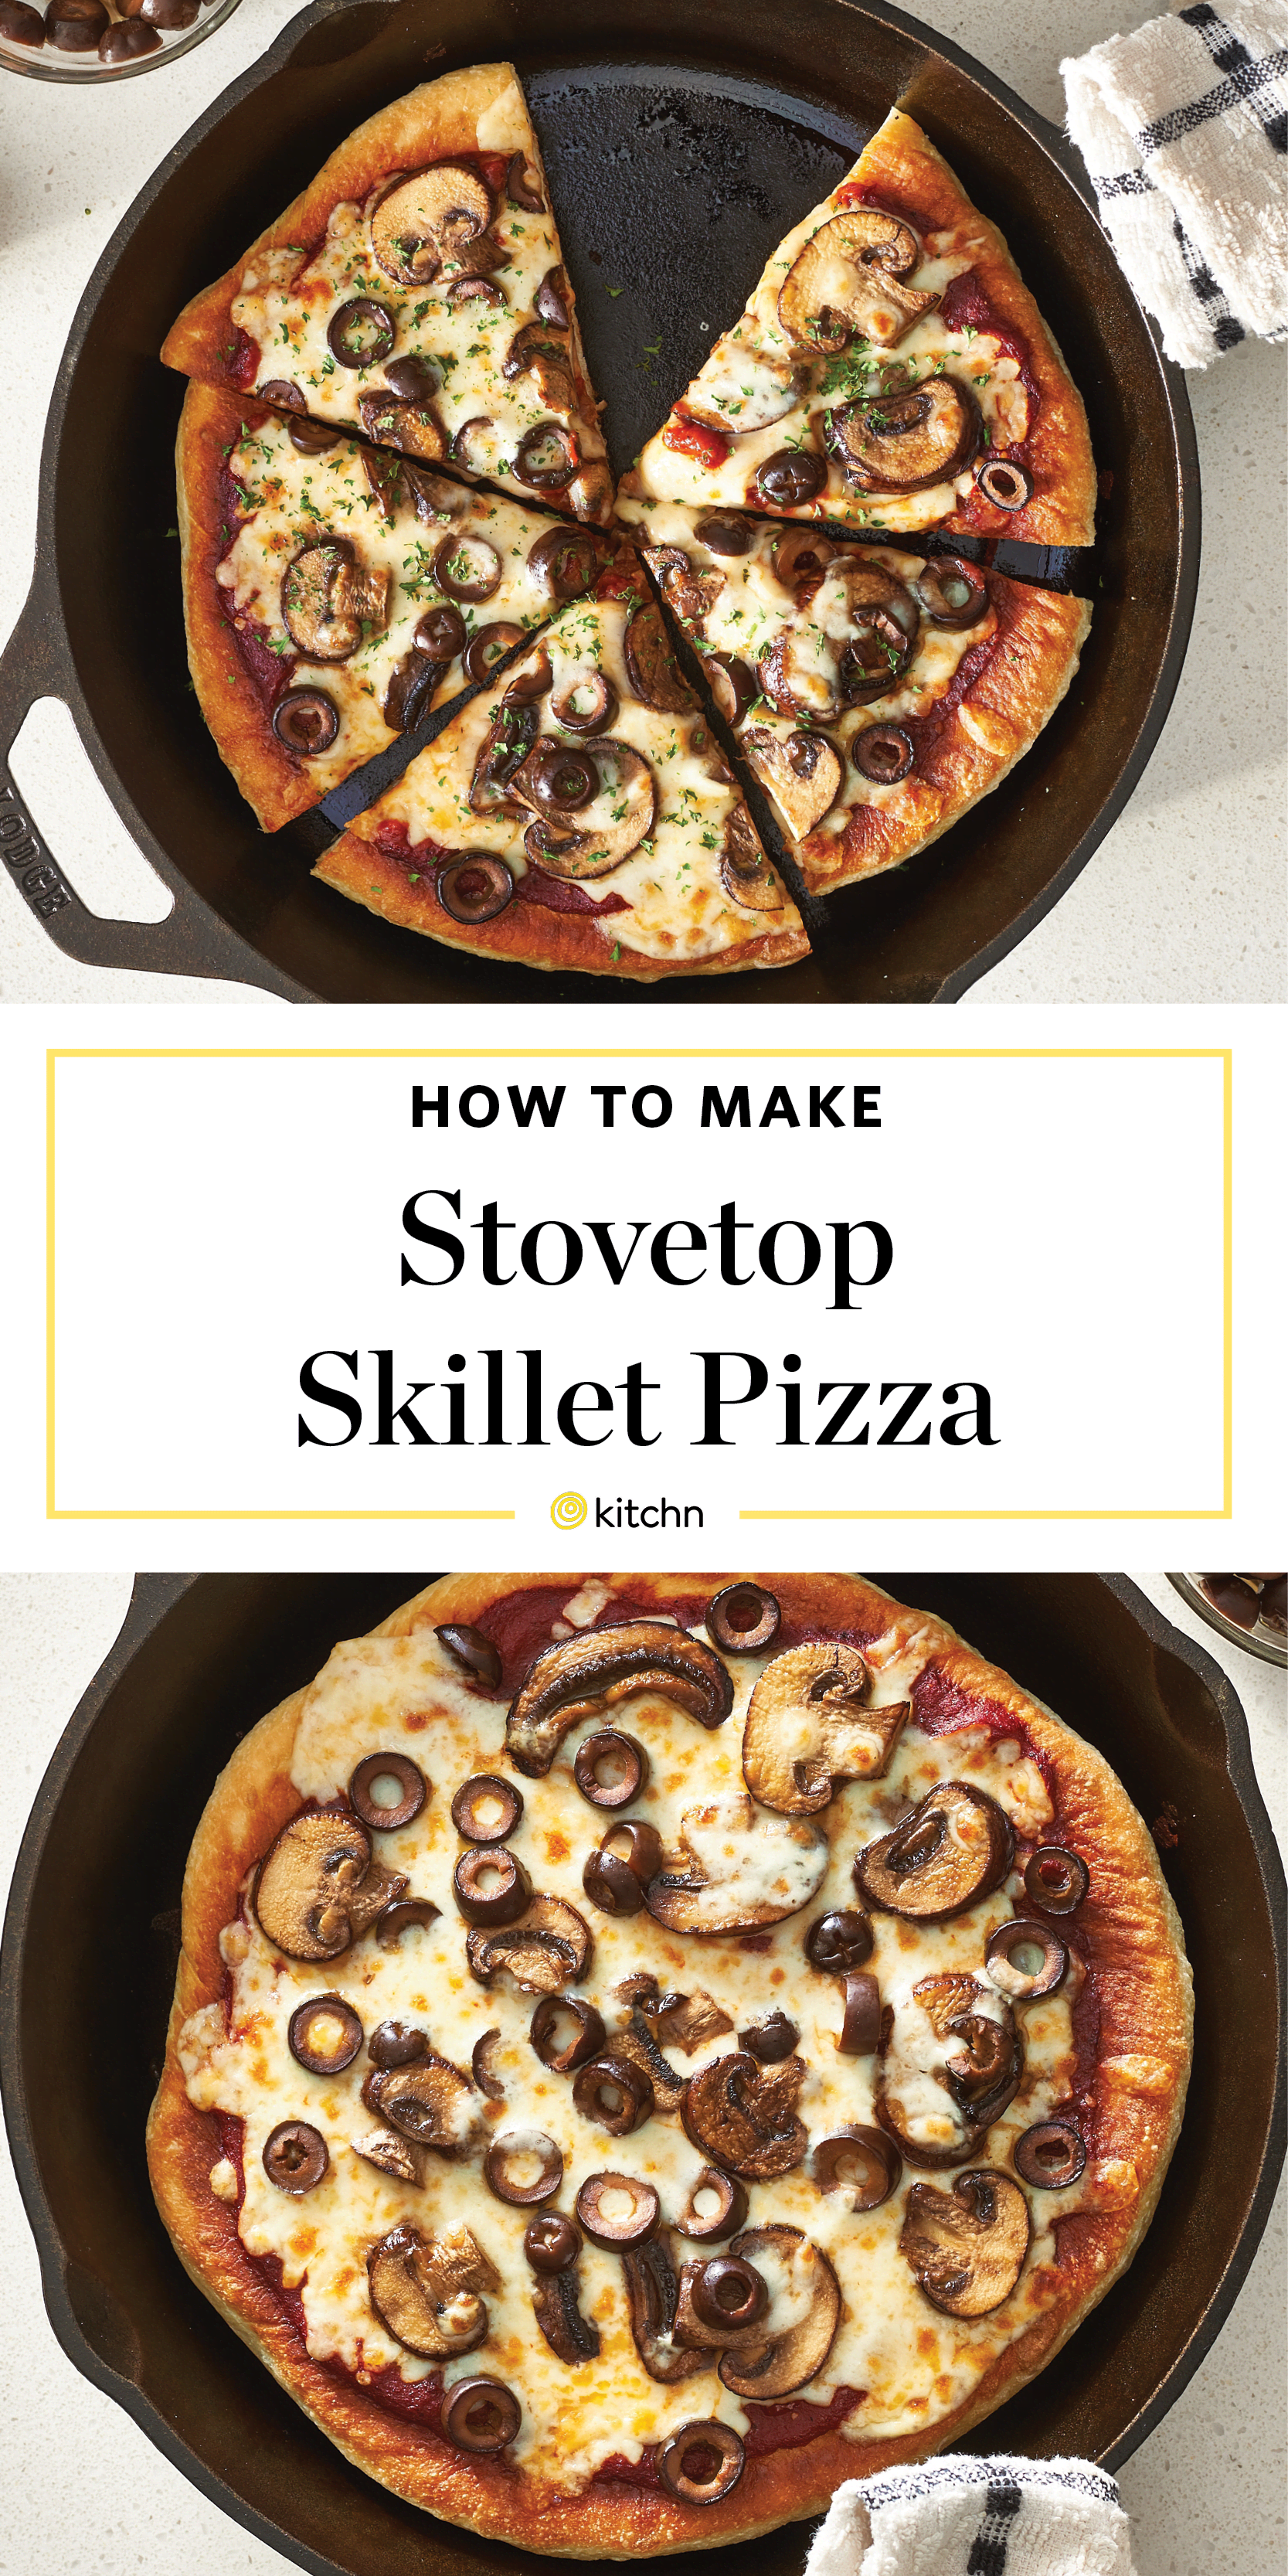 Stovetop Pizza